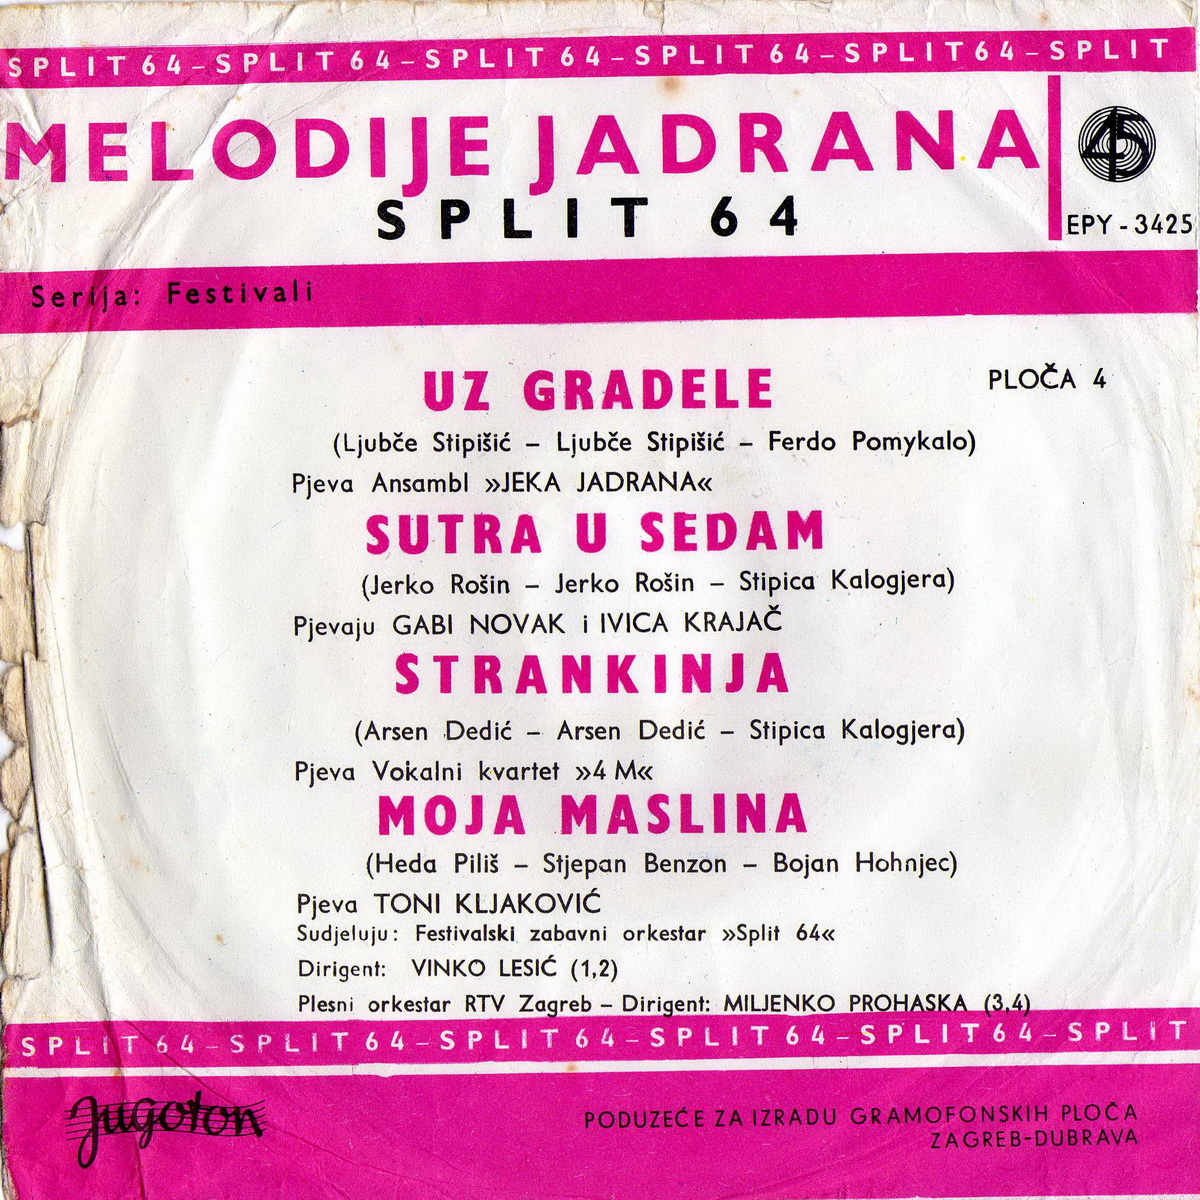 VA 1964 Split 64 Melodije Jadrana EP 4 b